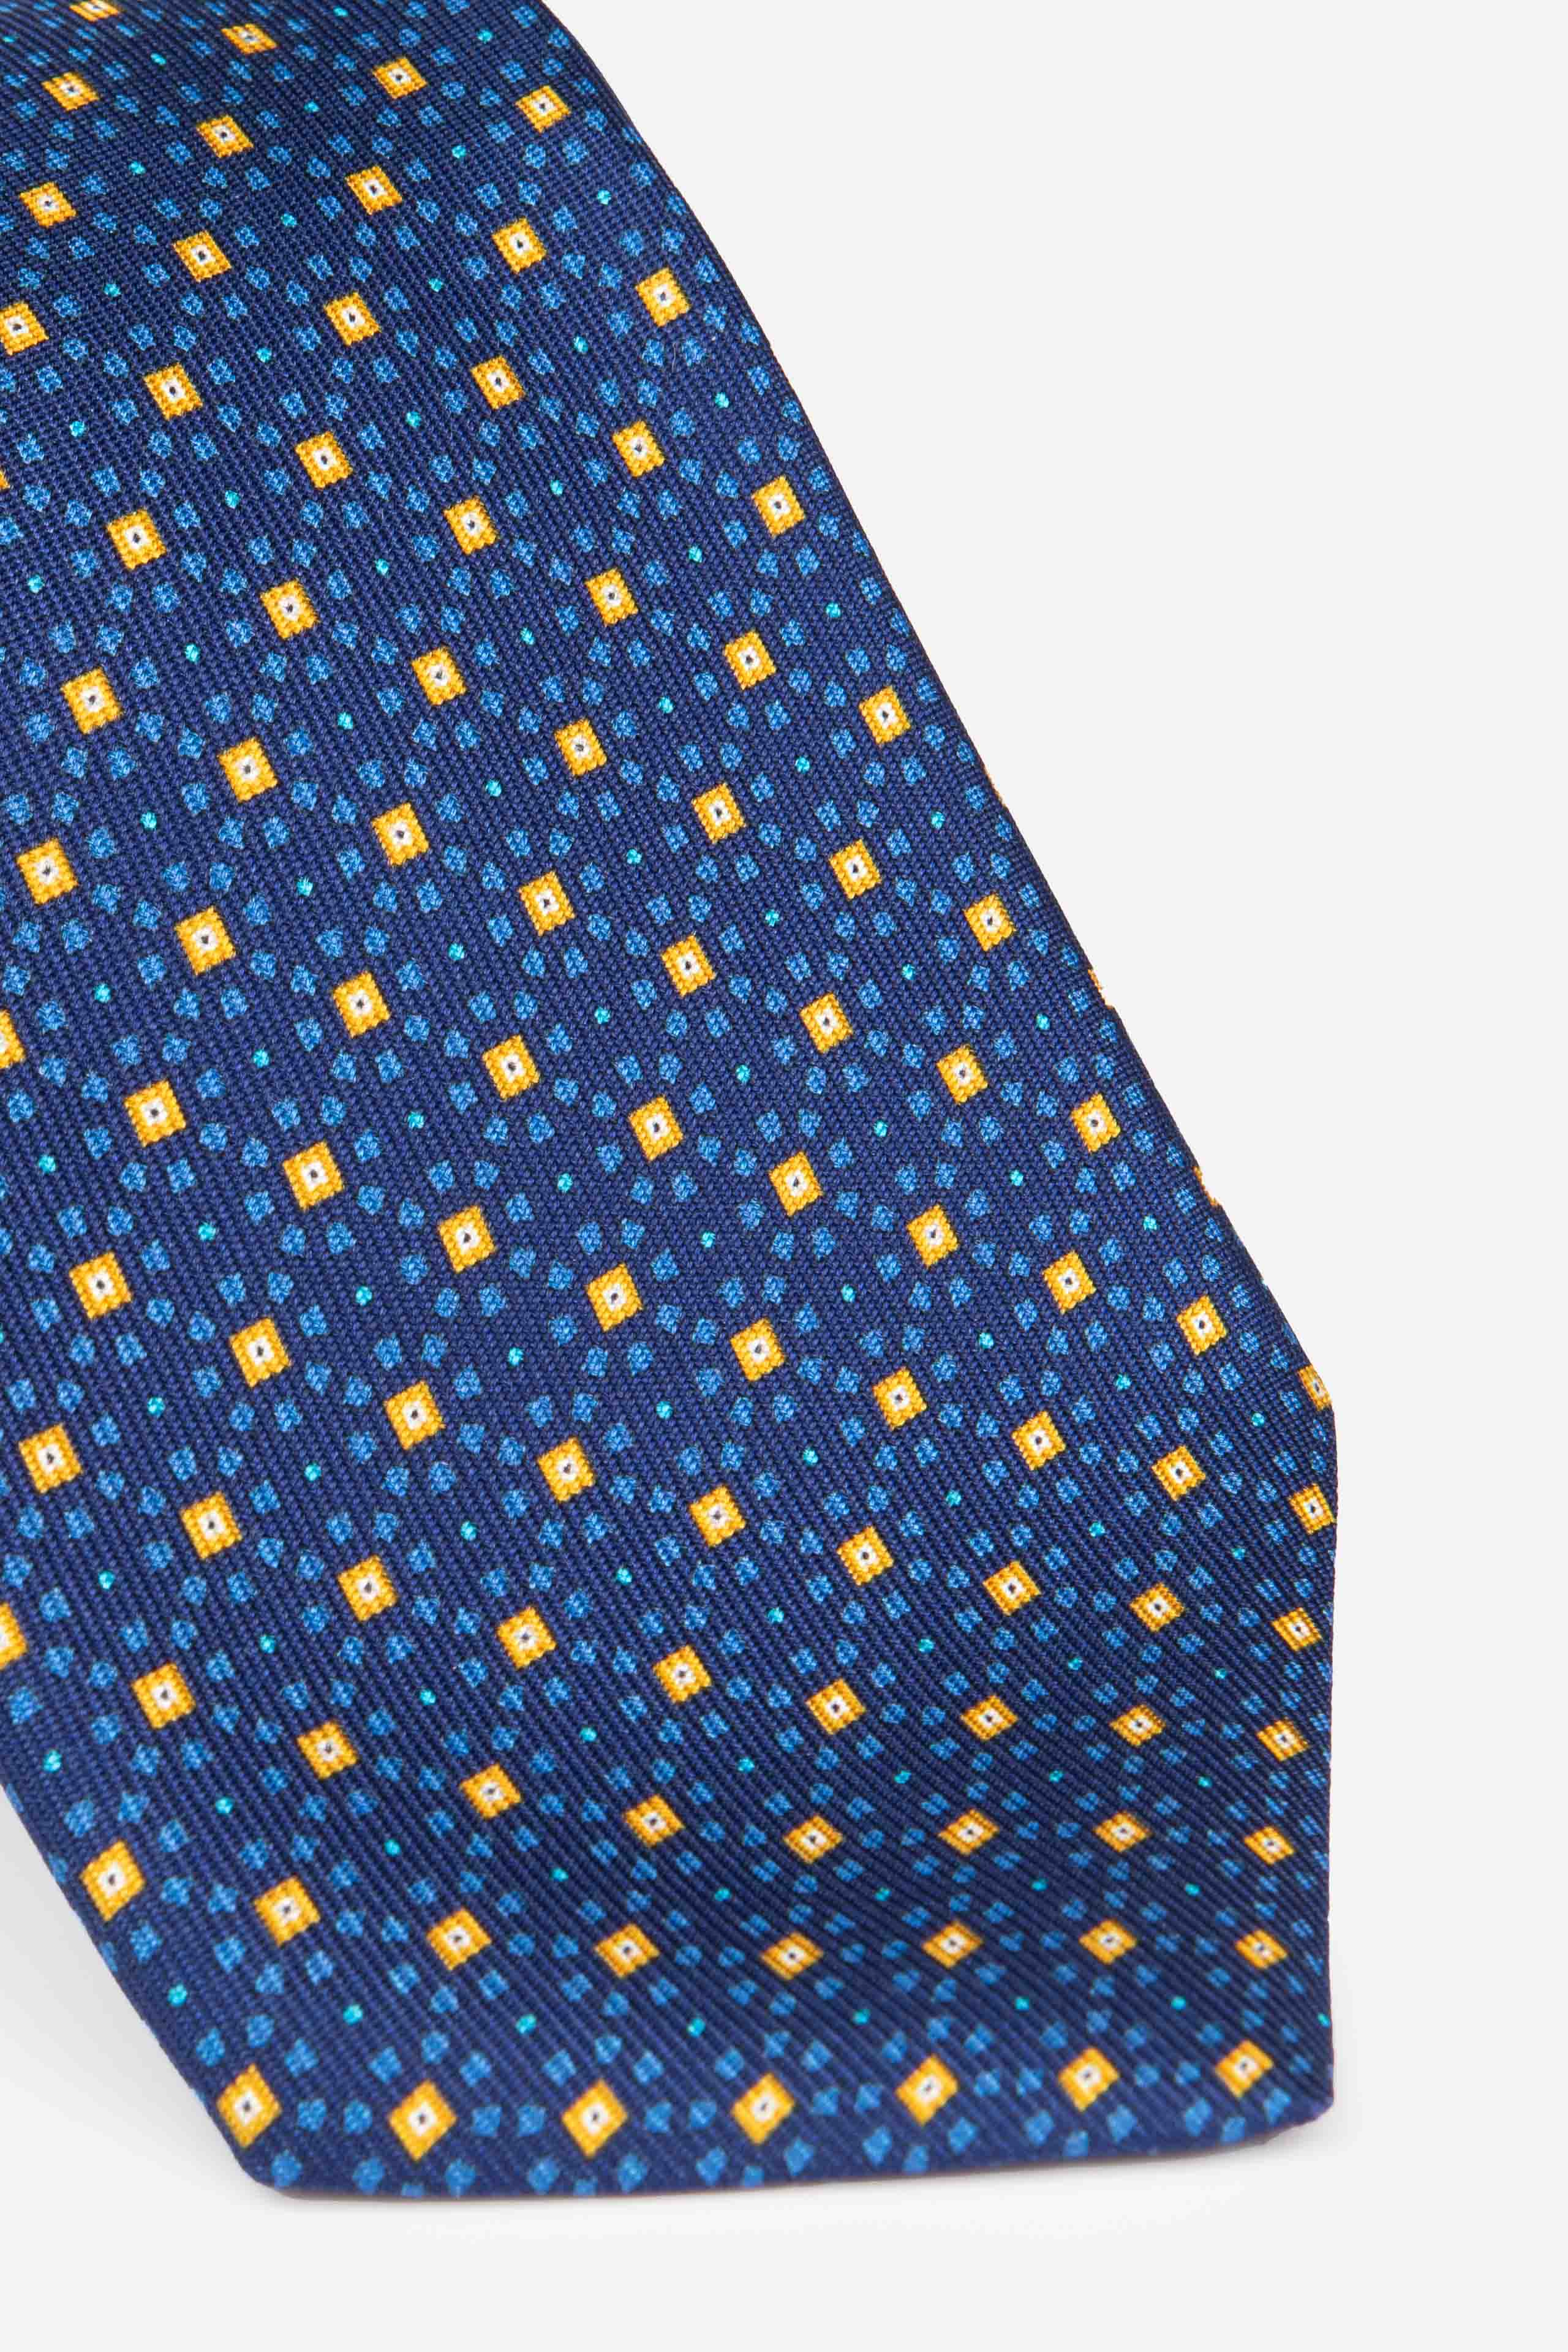 Blue micro patterned tie - Bluette pattern